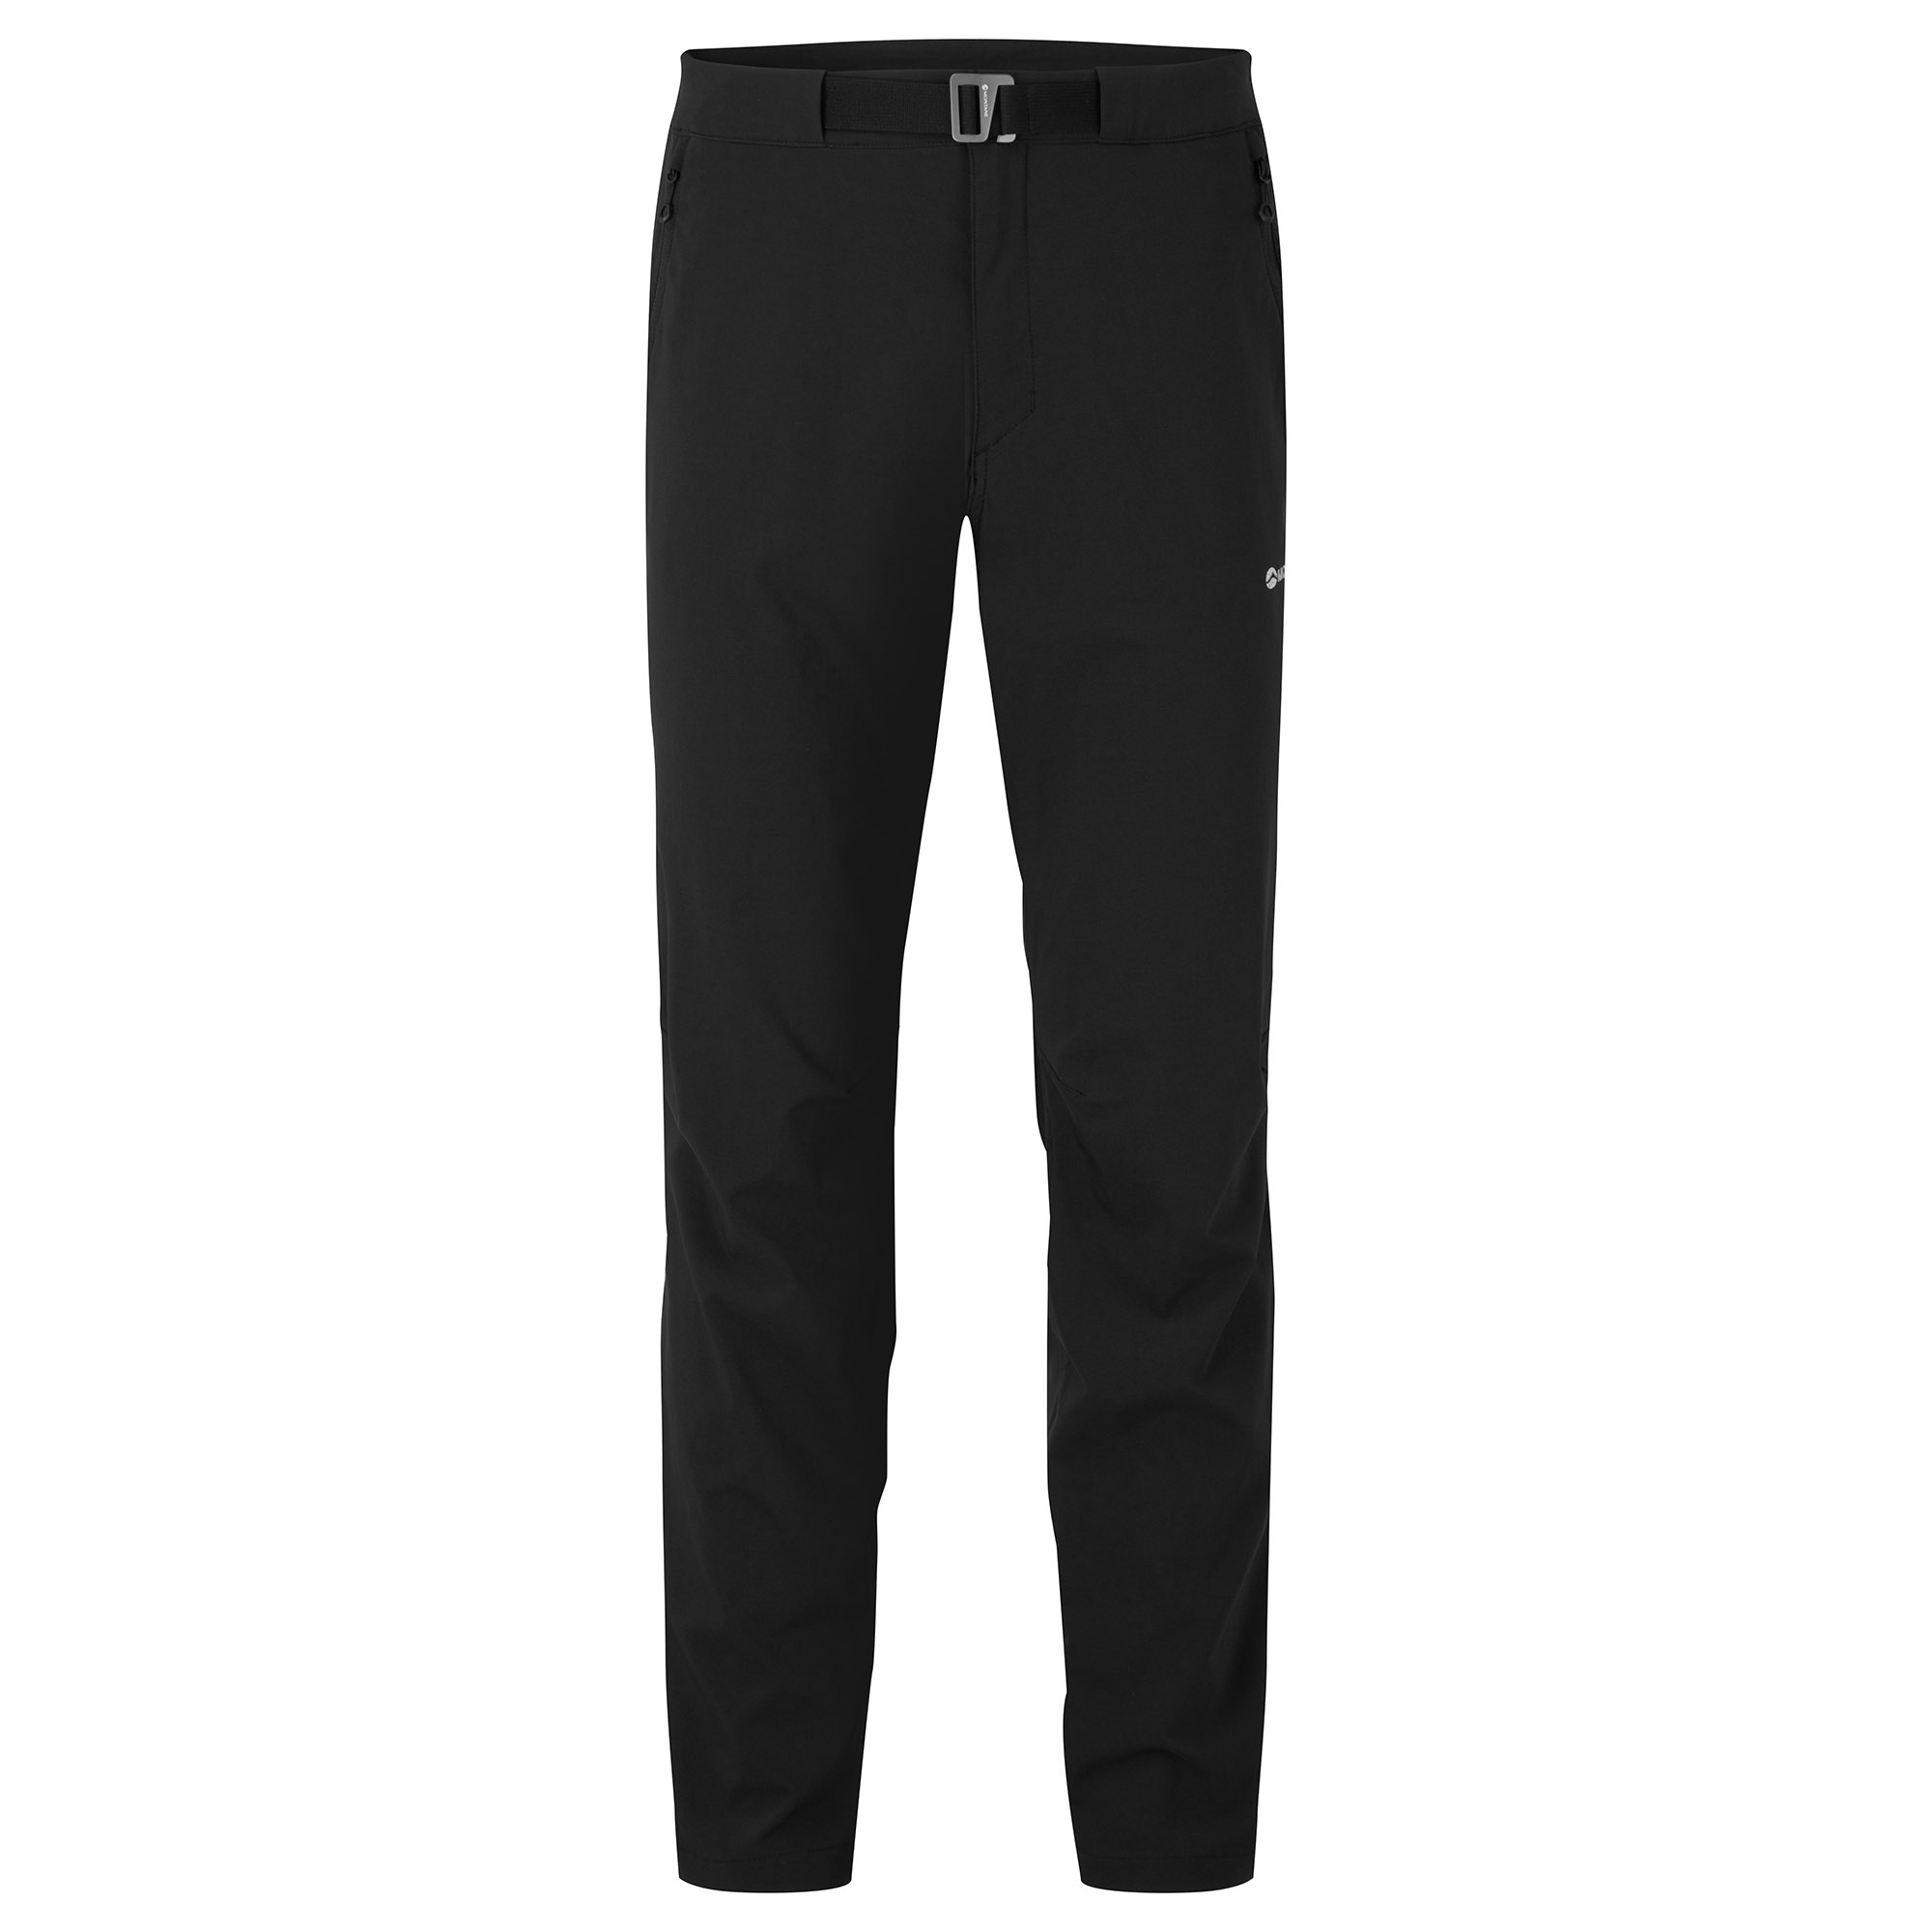 Montane pánské softshellové kalhoty Tenacity Lite Pants - Prodloužené Nohavice Barva: black, Velikost: 32